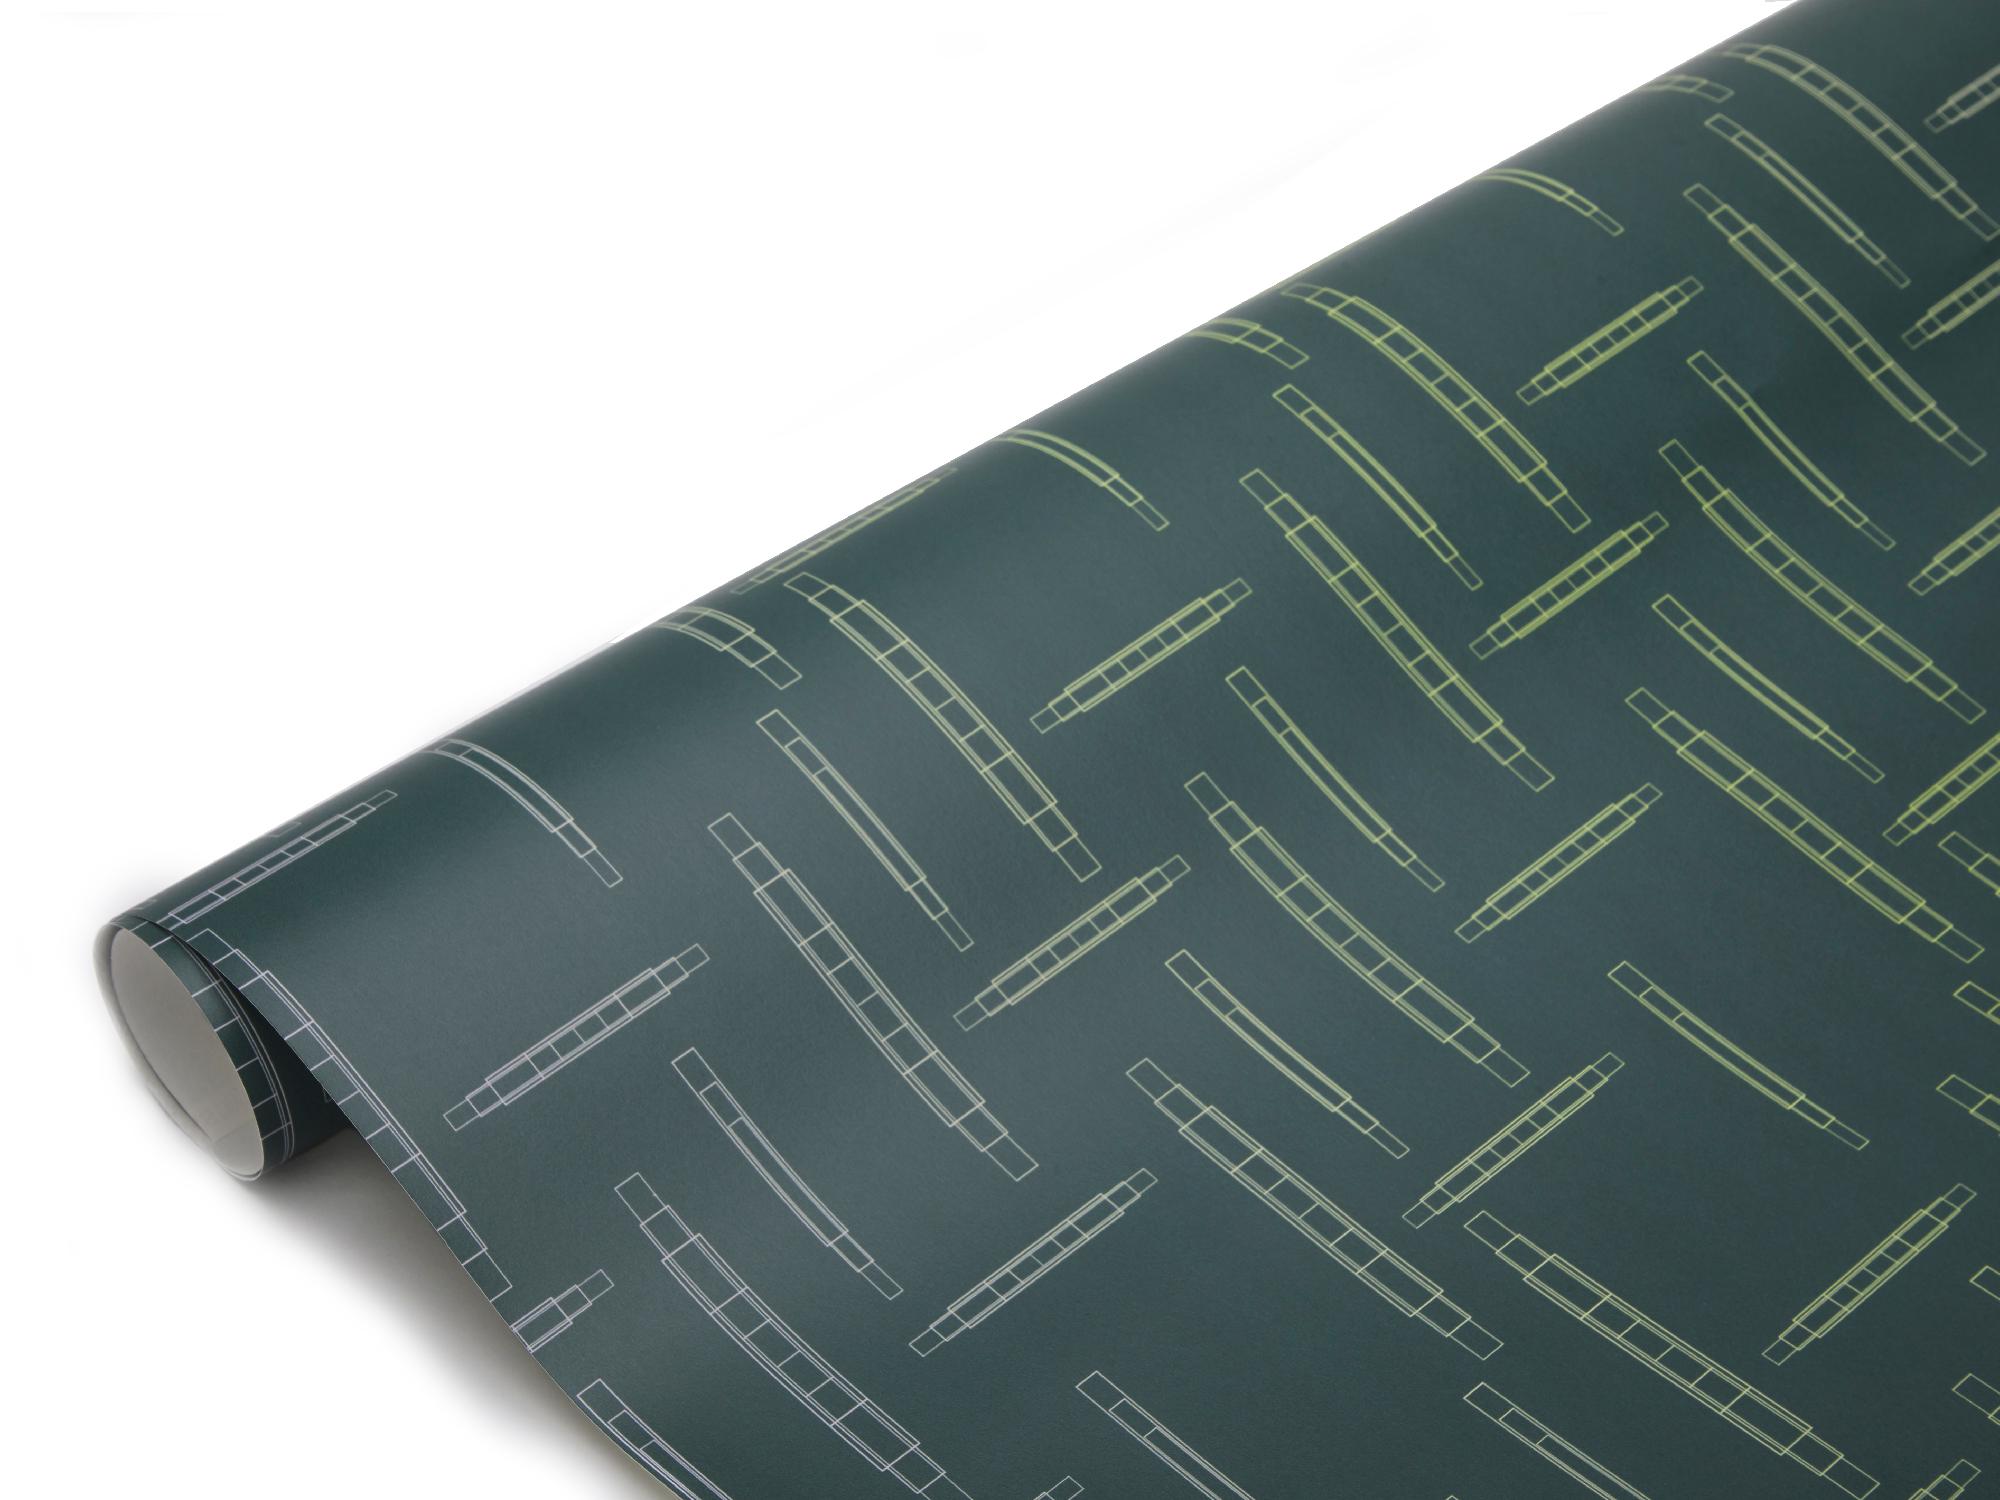 Conçu par la designer textile et artiste Alicia Reina, en collaboration avec Bianco Light + Space, le papier peint Chips est une expression abstraite des éléments techniques utilisés dans les systèmes électriques.

Couleurs : 1. Astro 2. Orchidée